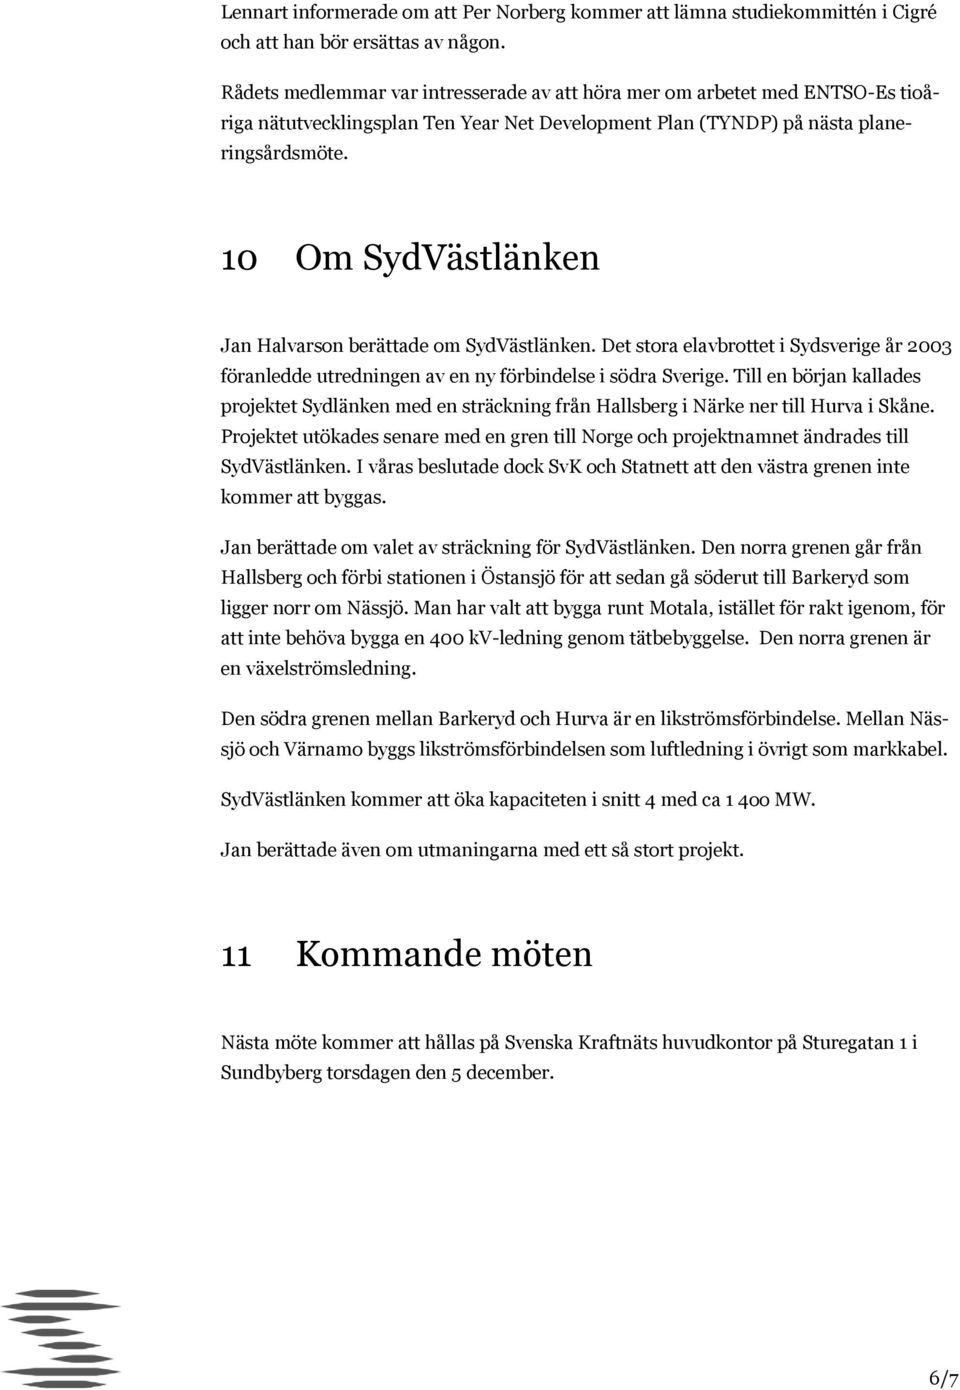 10 Om SydVästlänken Jan Halvarson berättade om SydVästlänken. Det stora elavbrottet i Sydsverige år 2003 föranledde utredningen av en ny förbindelse i södra Sverige.